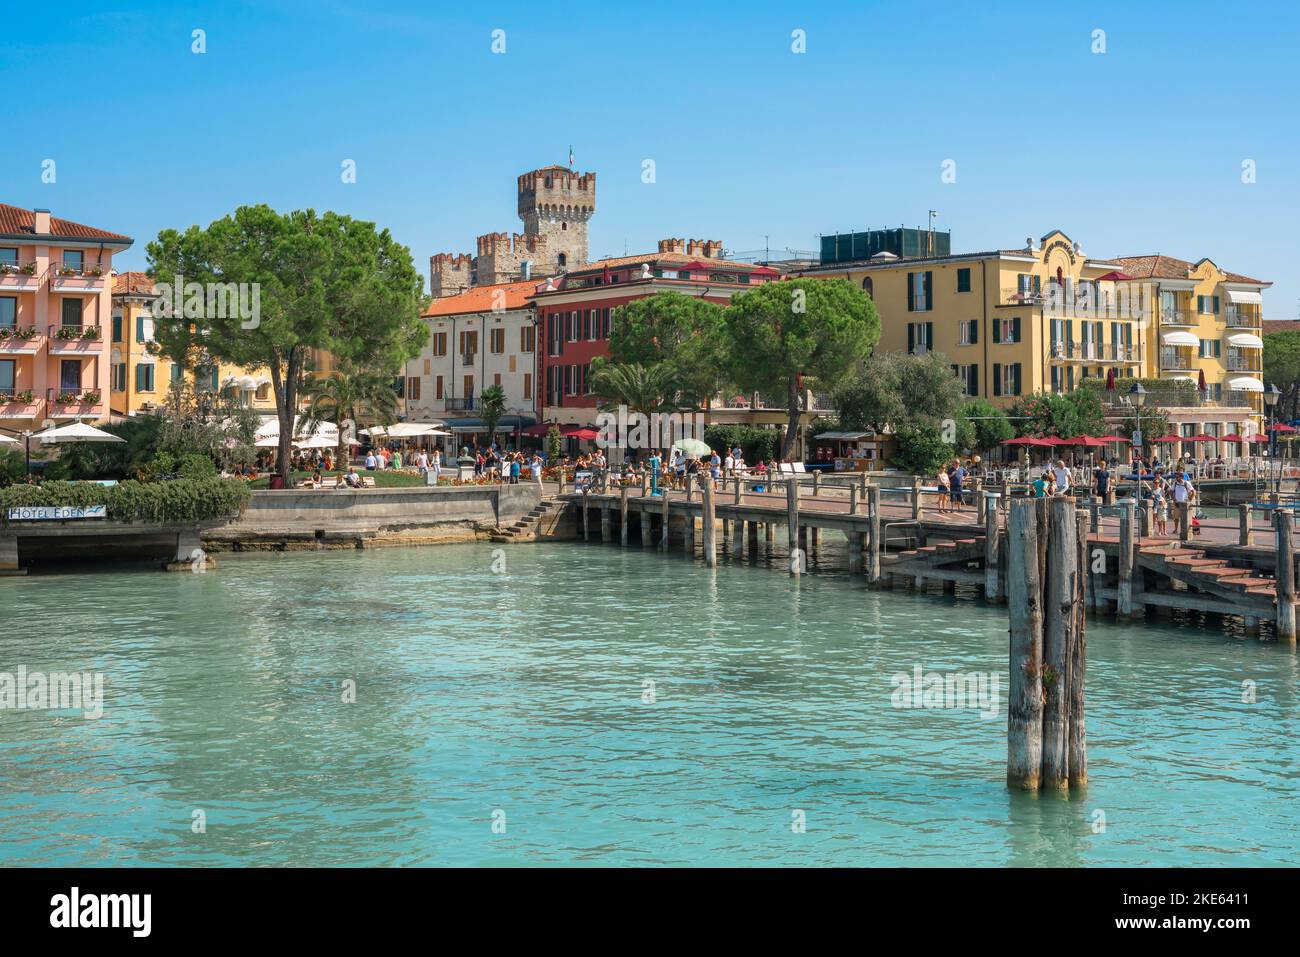 Sirmione ciudad, vista en verano del muelle del ferry en la pintoresca ciudad a orillas del lago de Sirmione, Lago Garda, Lombardía, Italia Foto de stock